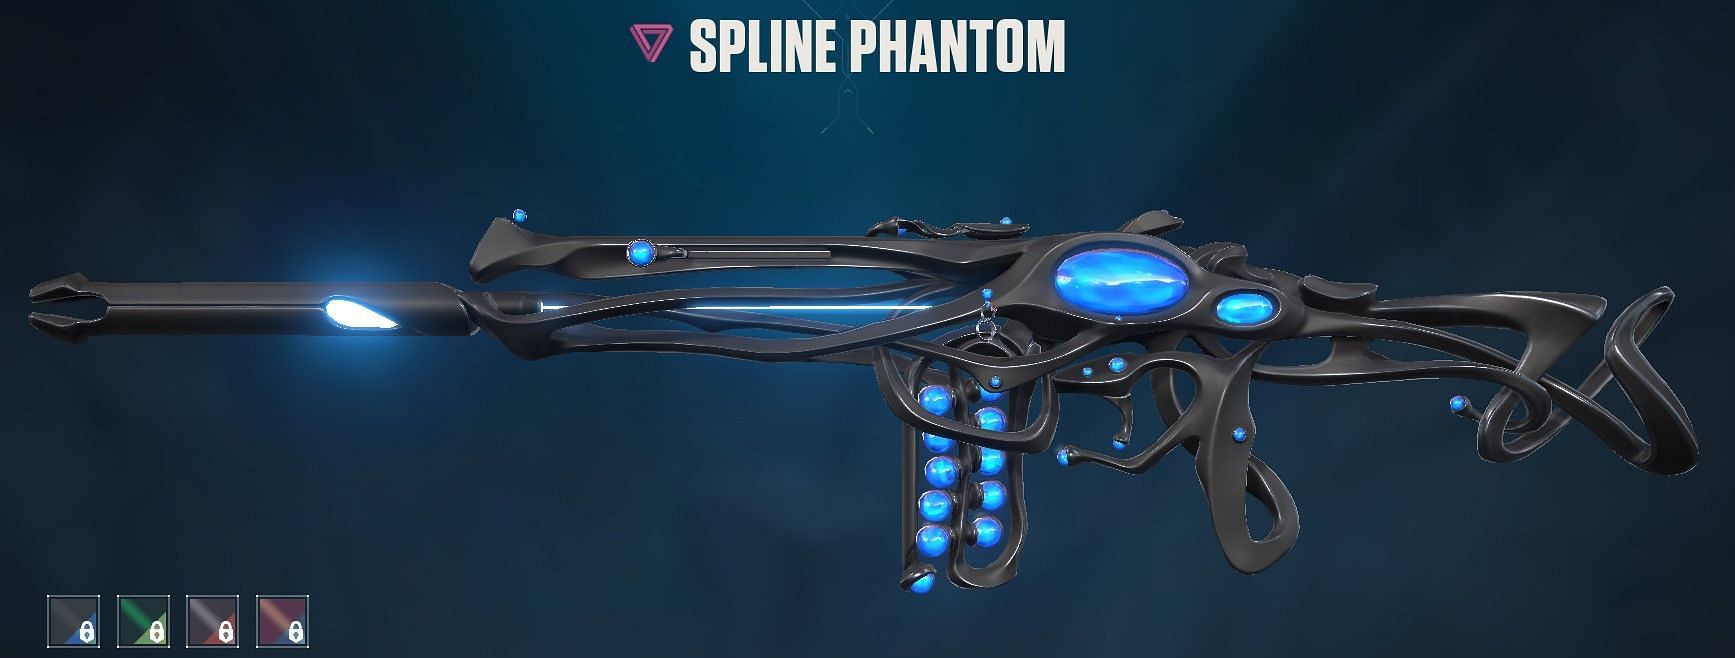 Spline Phantom (Image via Riot Games)